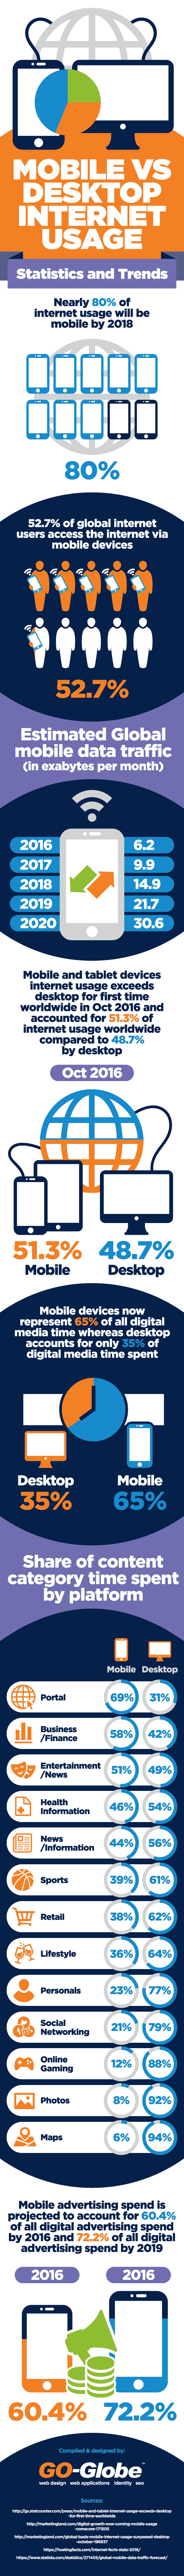 Mobile Vs Desktop Internet Usage Statistics and Trends